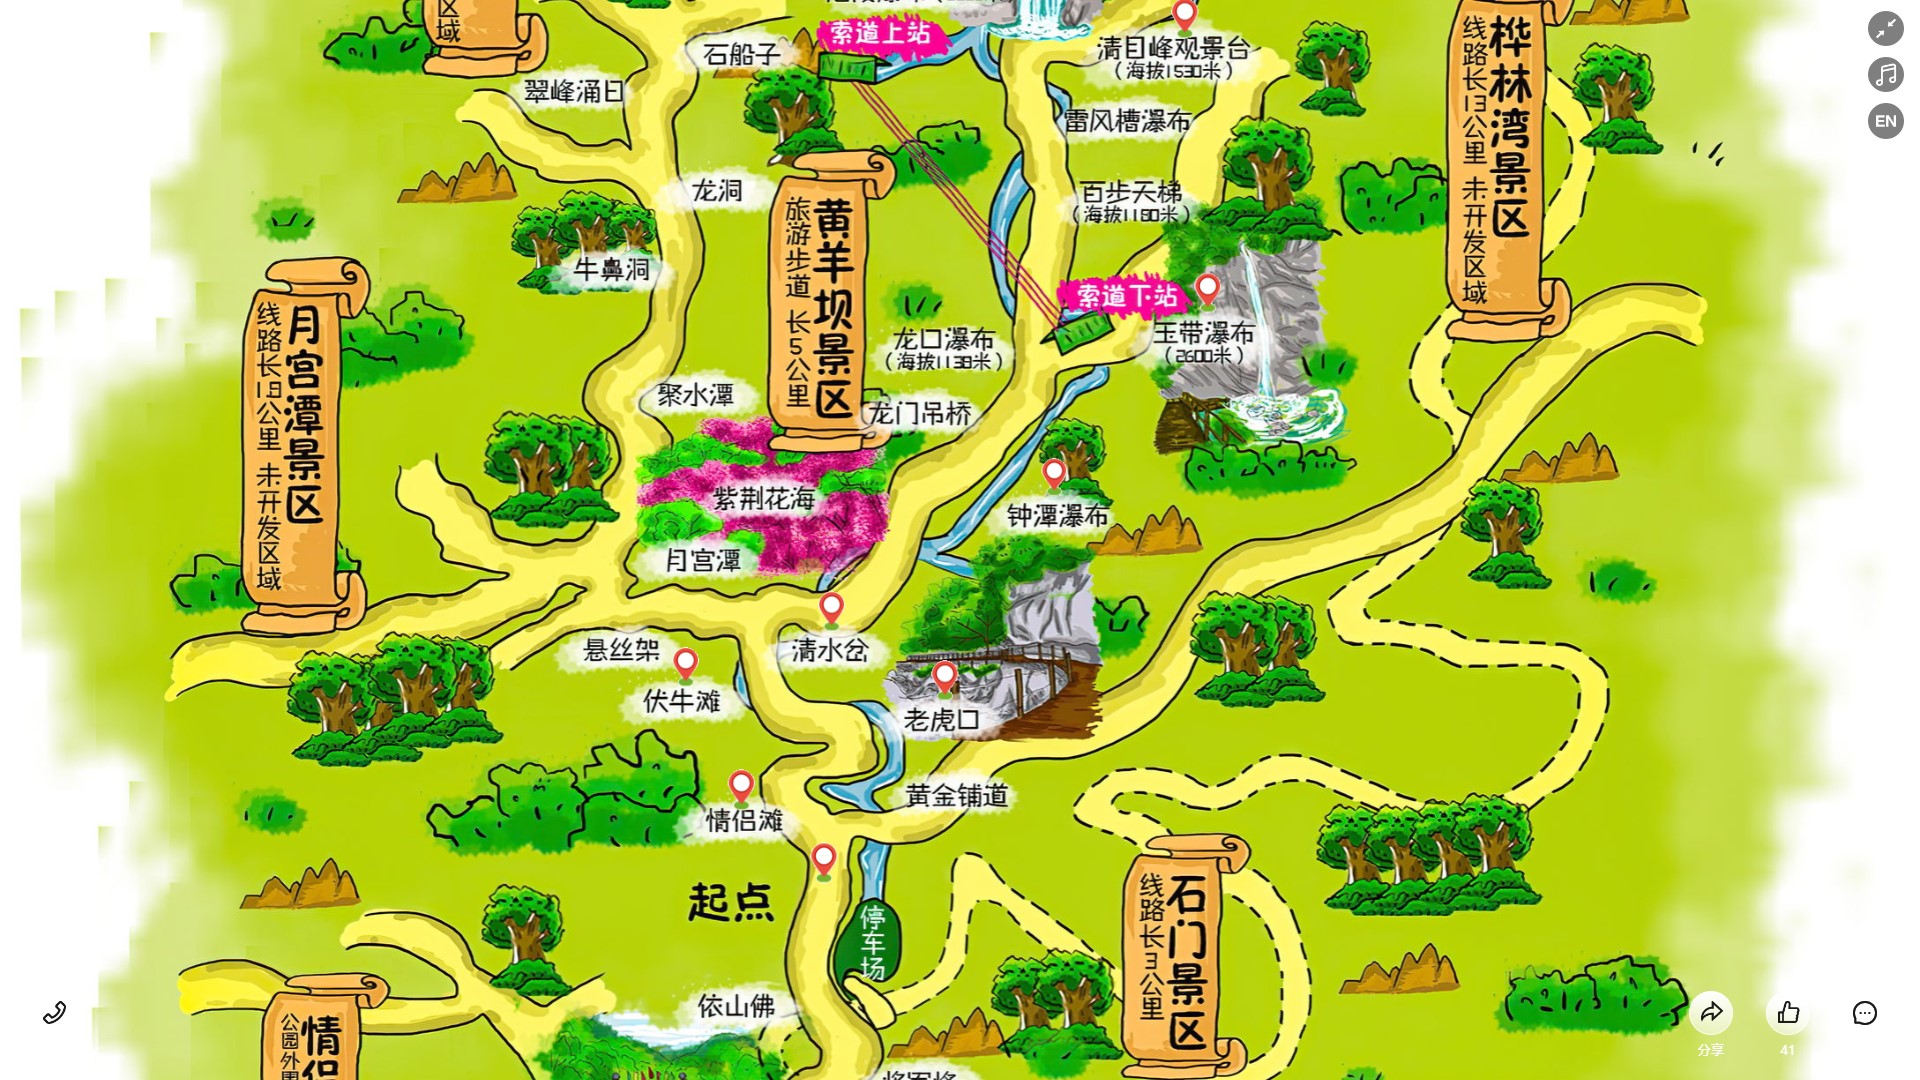 金江镇景区导览系统